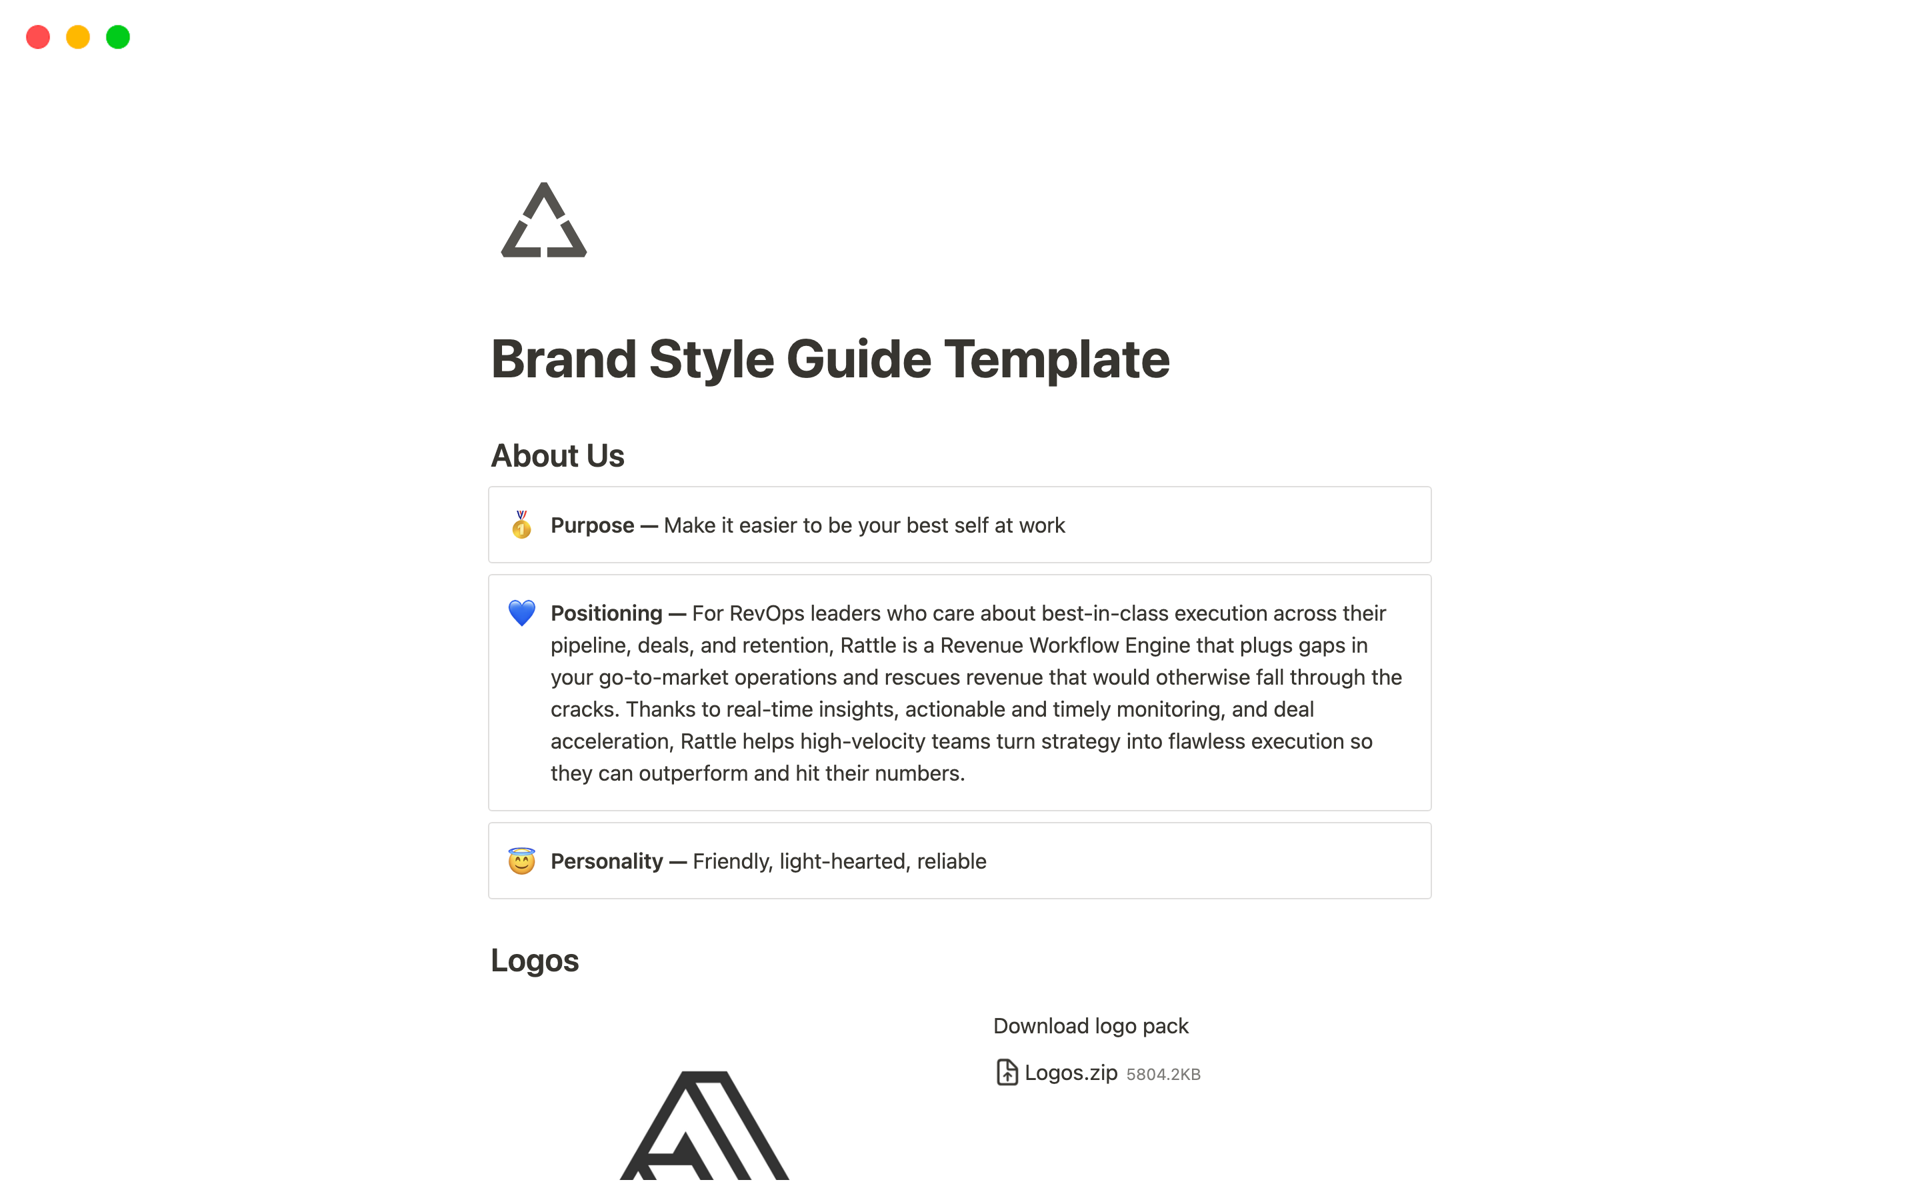 En förhandsgranskning av mallen för Brand Style Guide